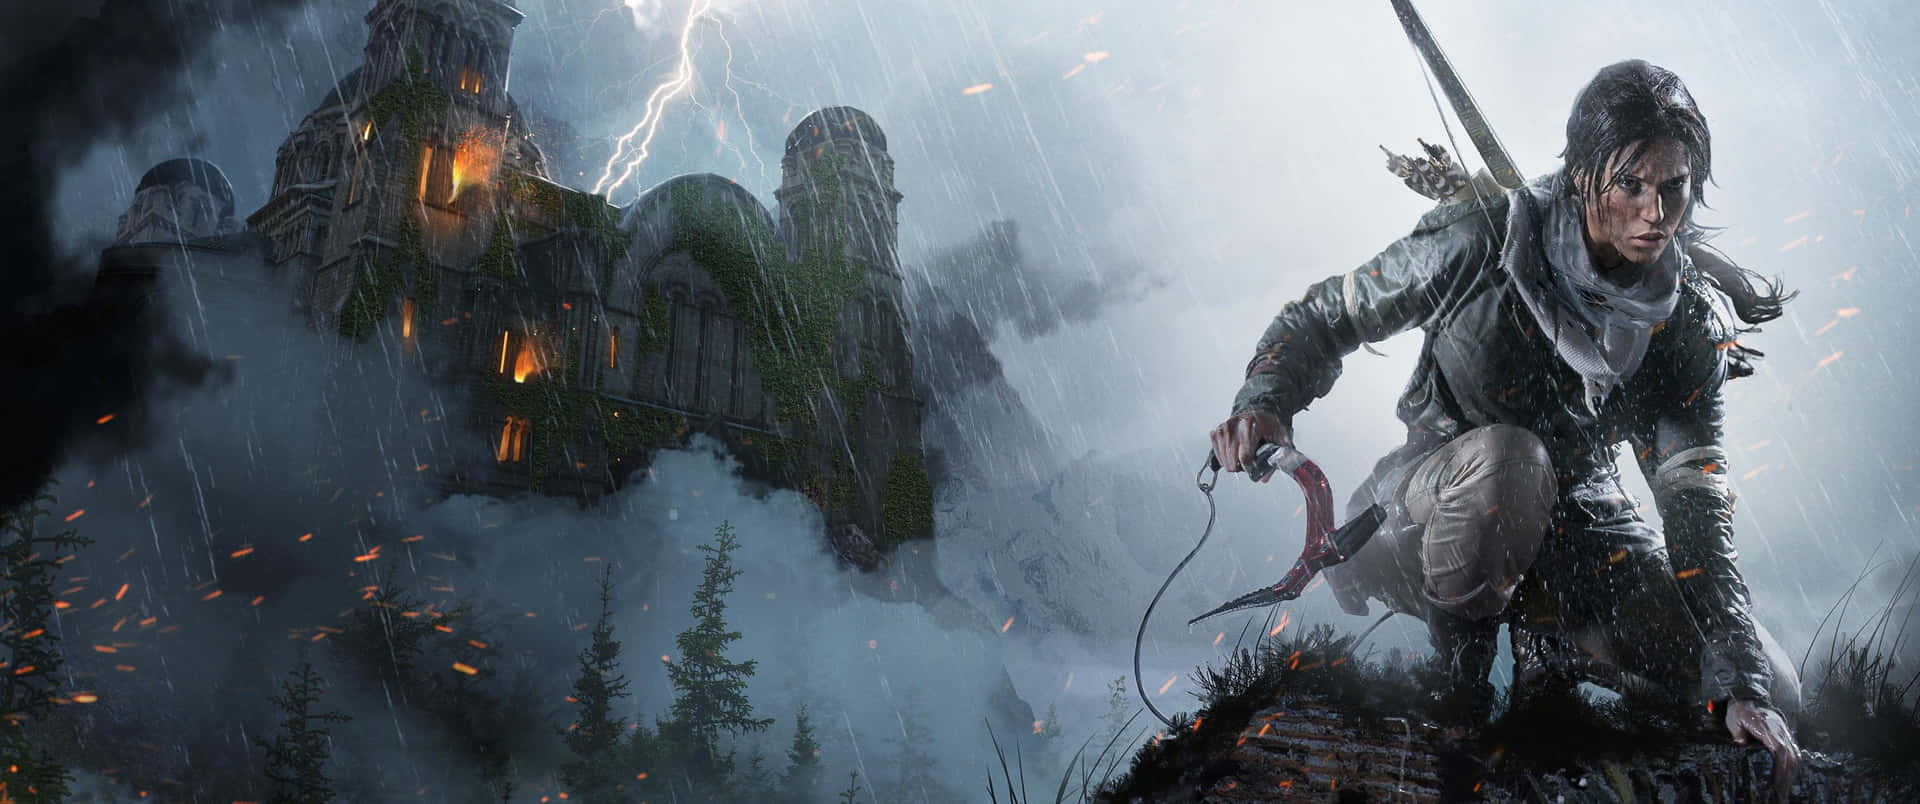 Lara Crouching Down 3440x1440p Rise Of The Tomb Raider Background